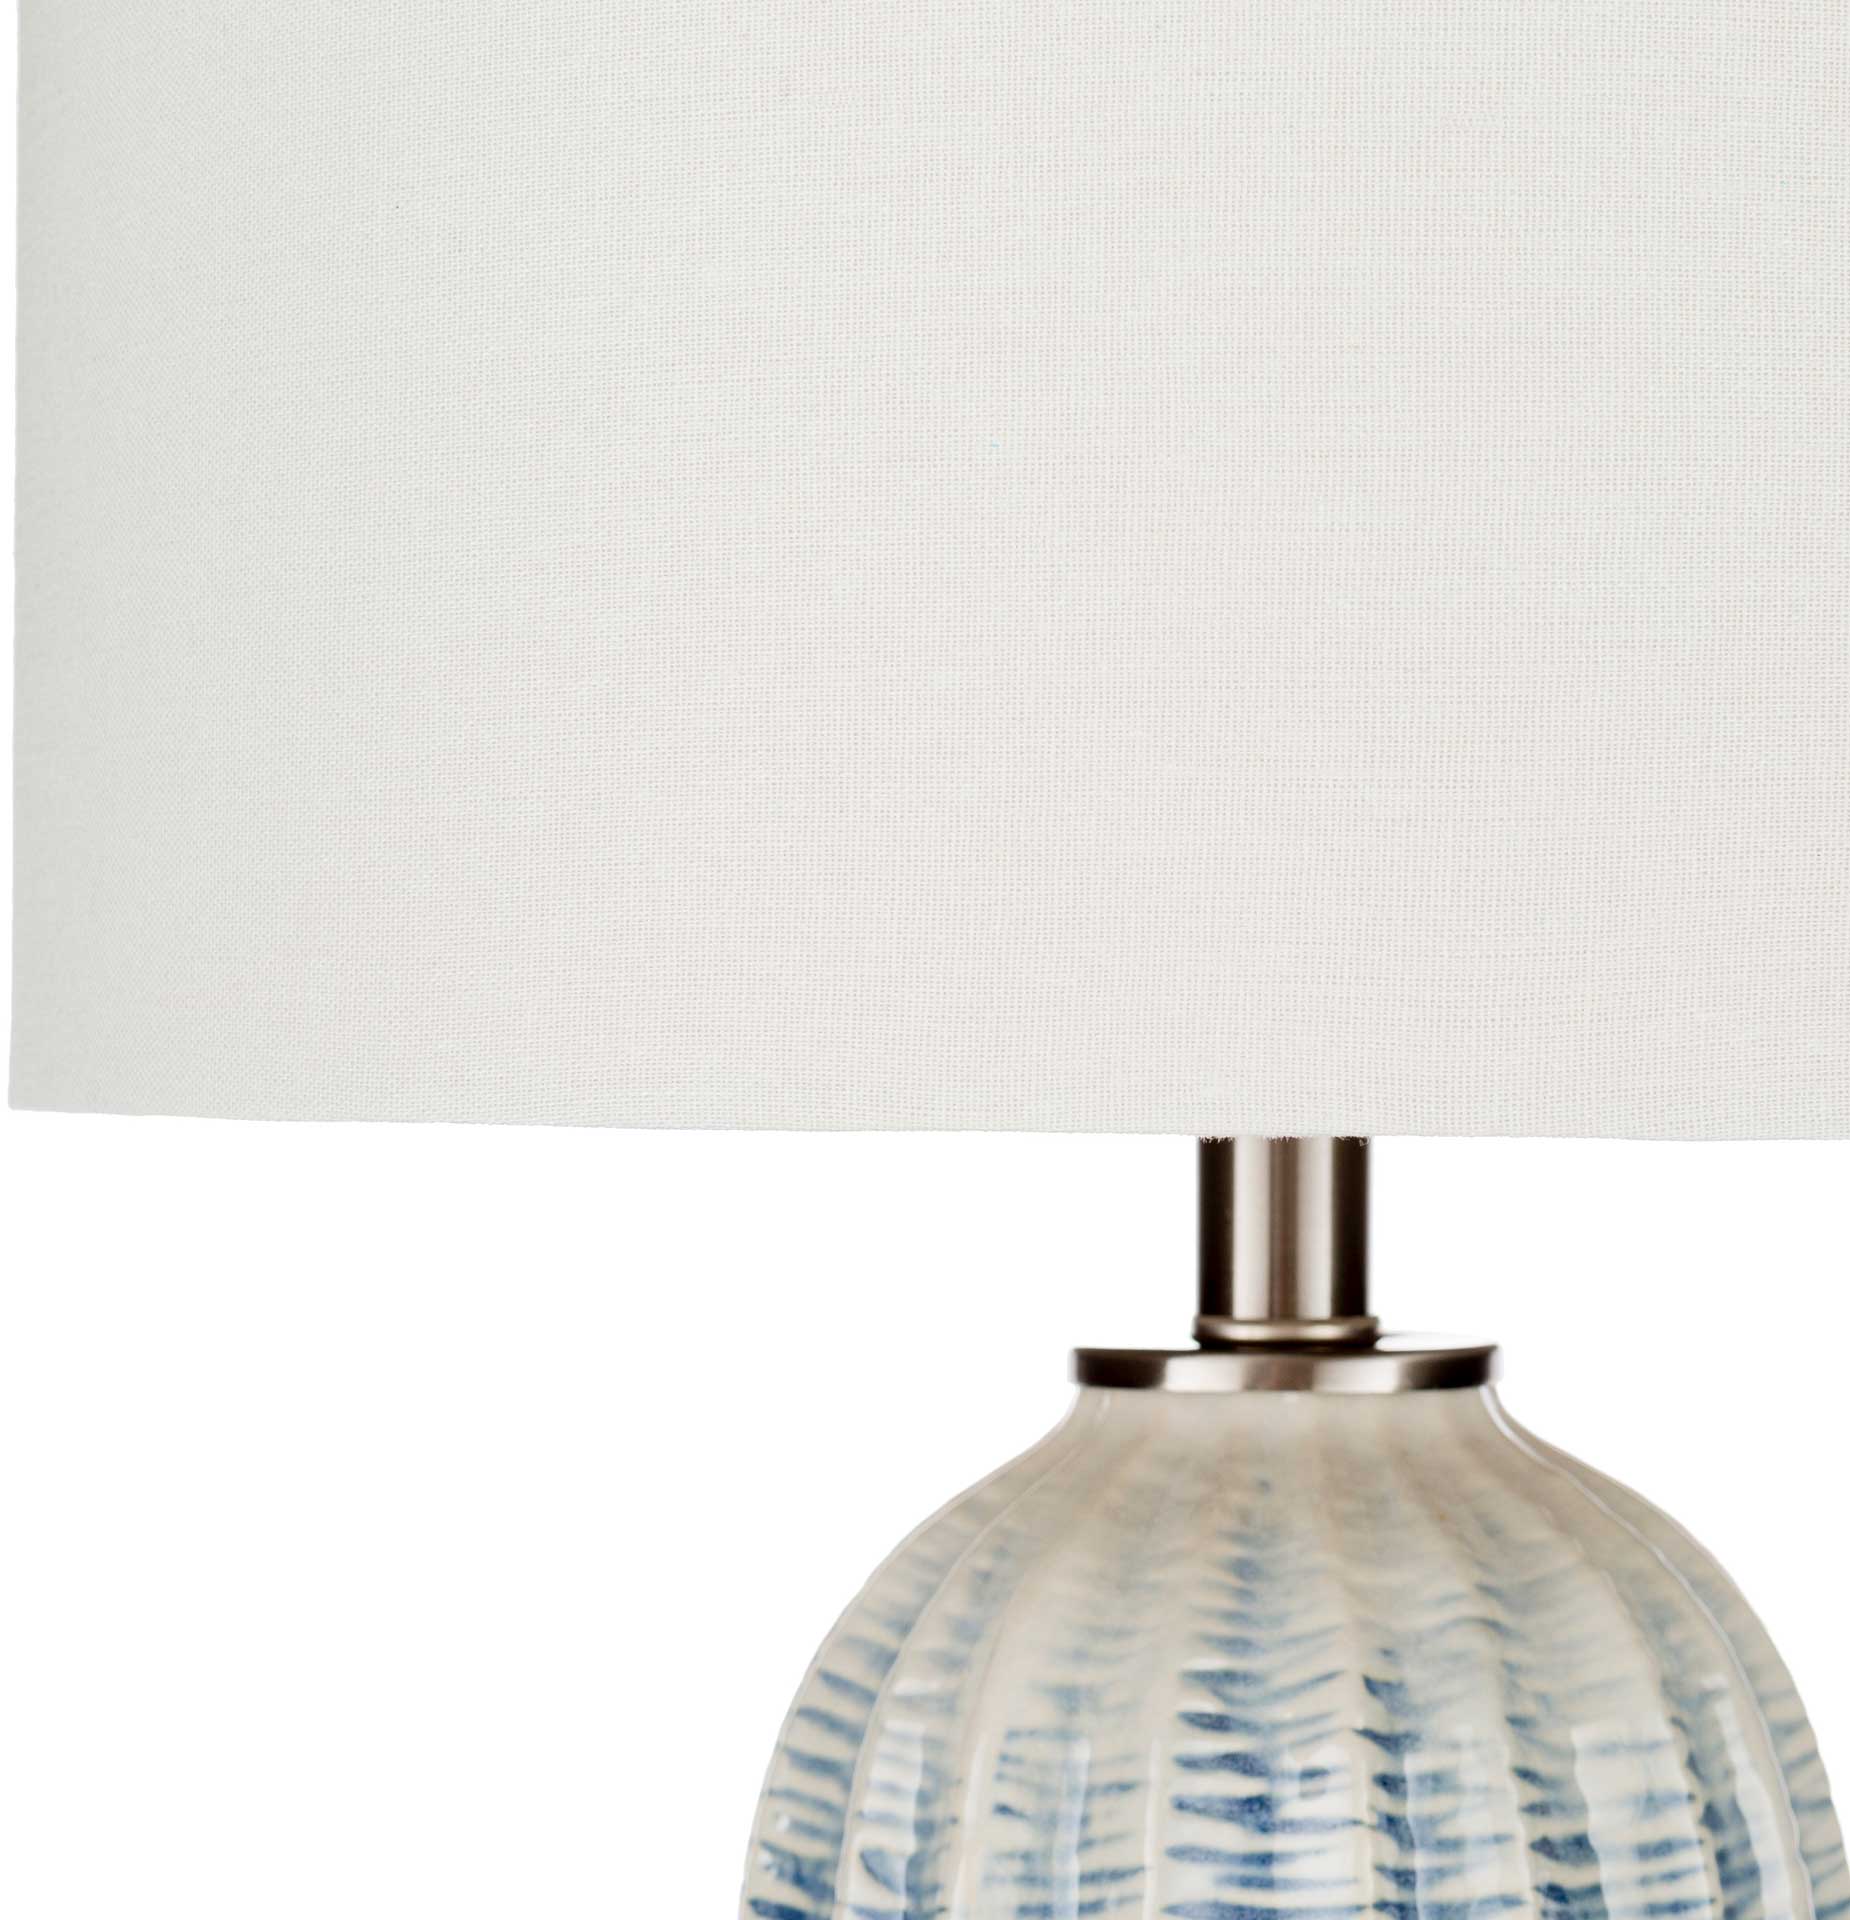 Adelaide Table Lamp Navy/White/Blue